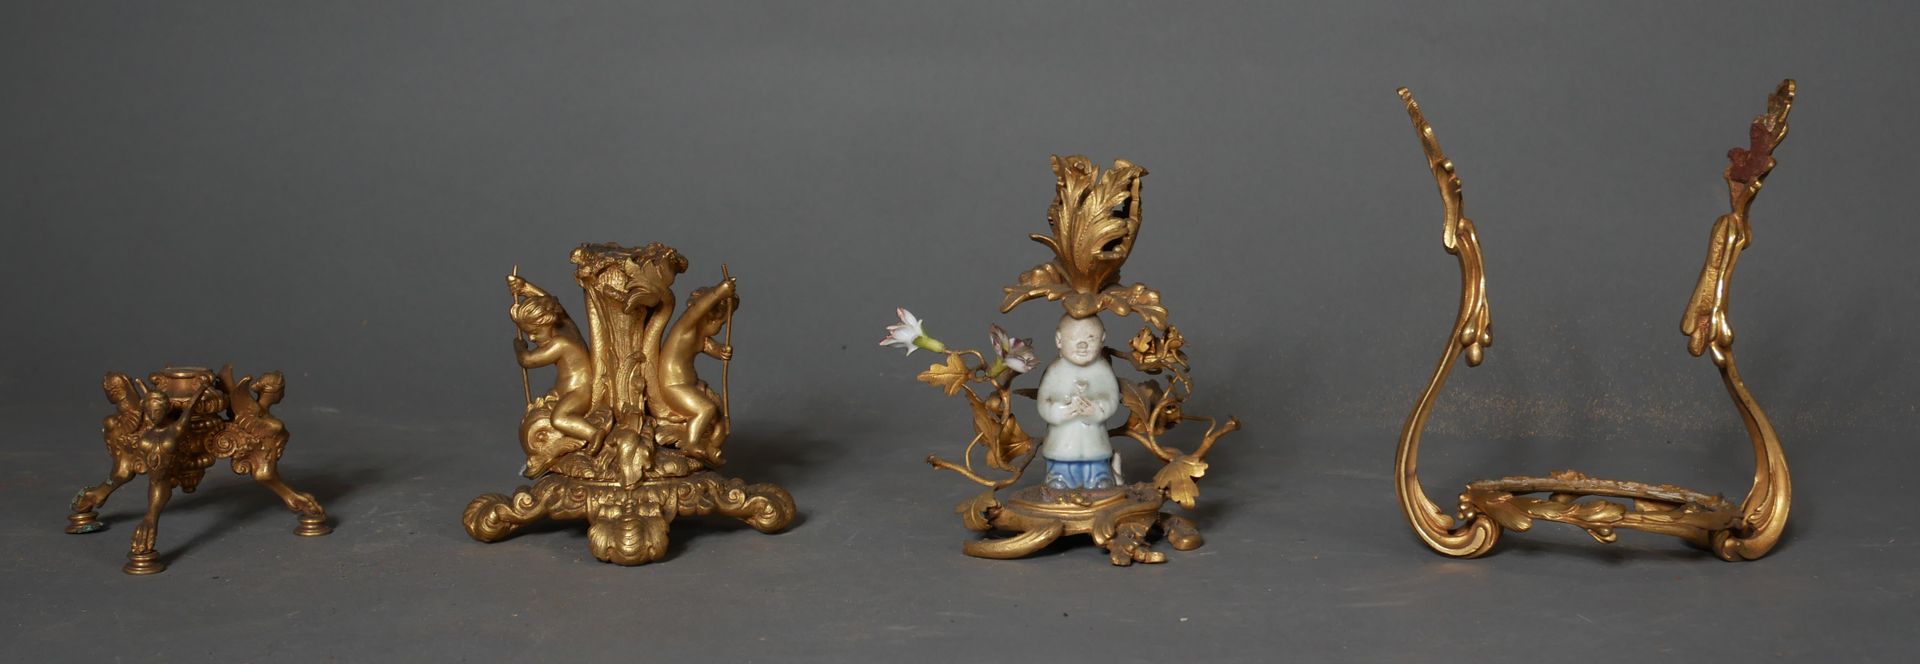 Null * 两件青铜展示架和支架的拍品。饰有小男孩的青铜和瓷器烛台

高：13厘米（缺）。